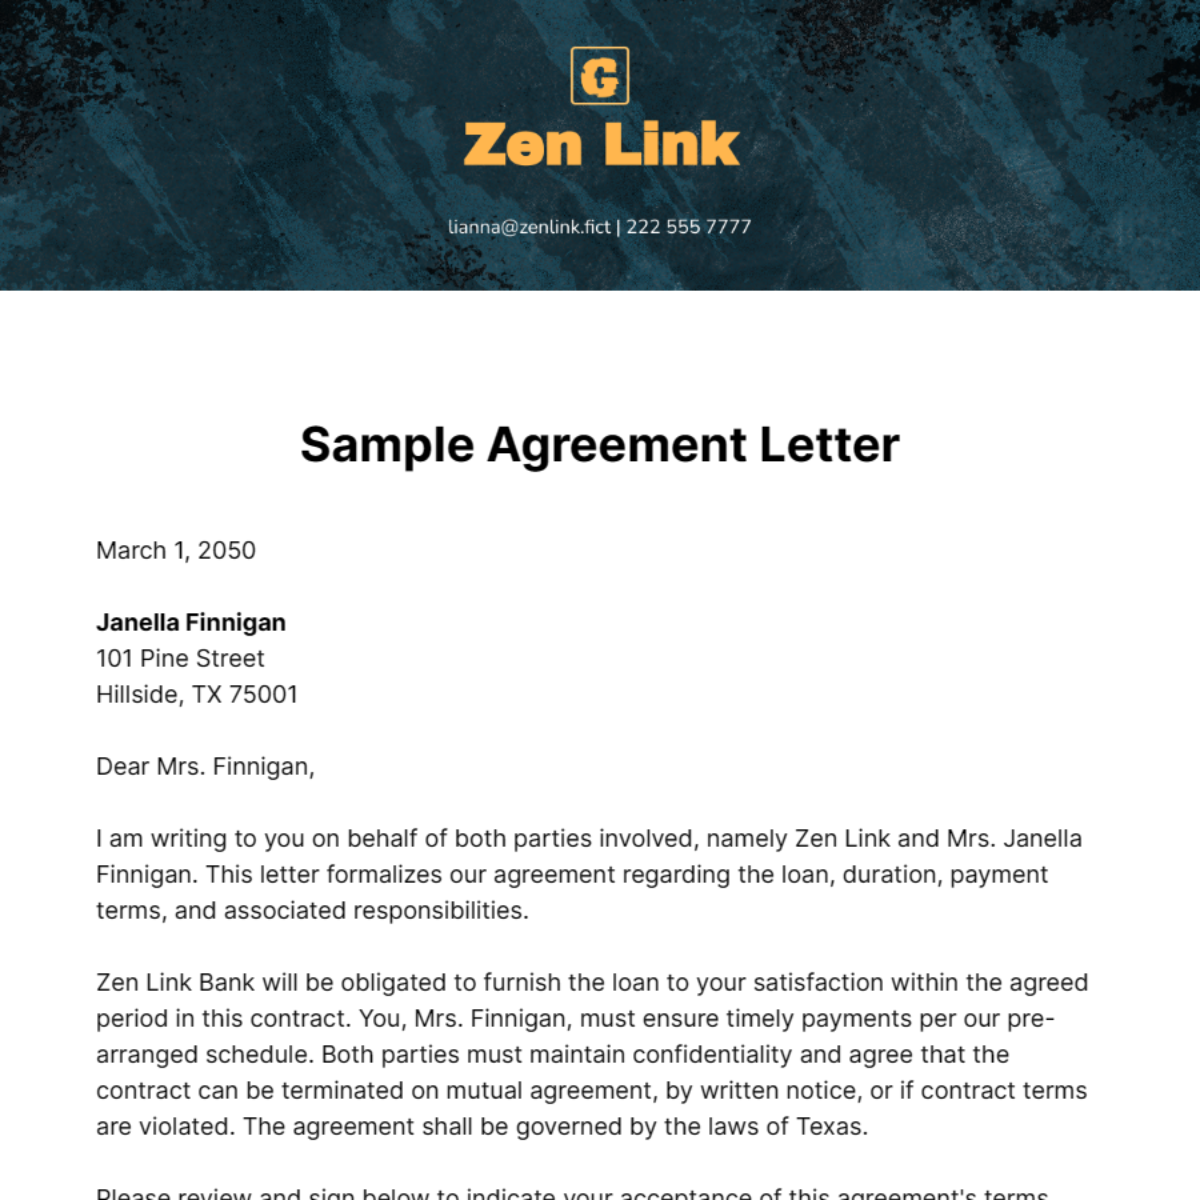 Sample Agreement Letter Template